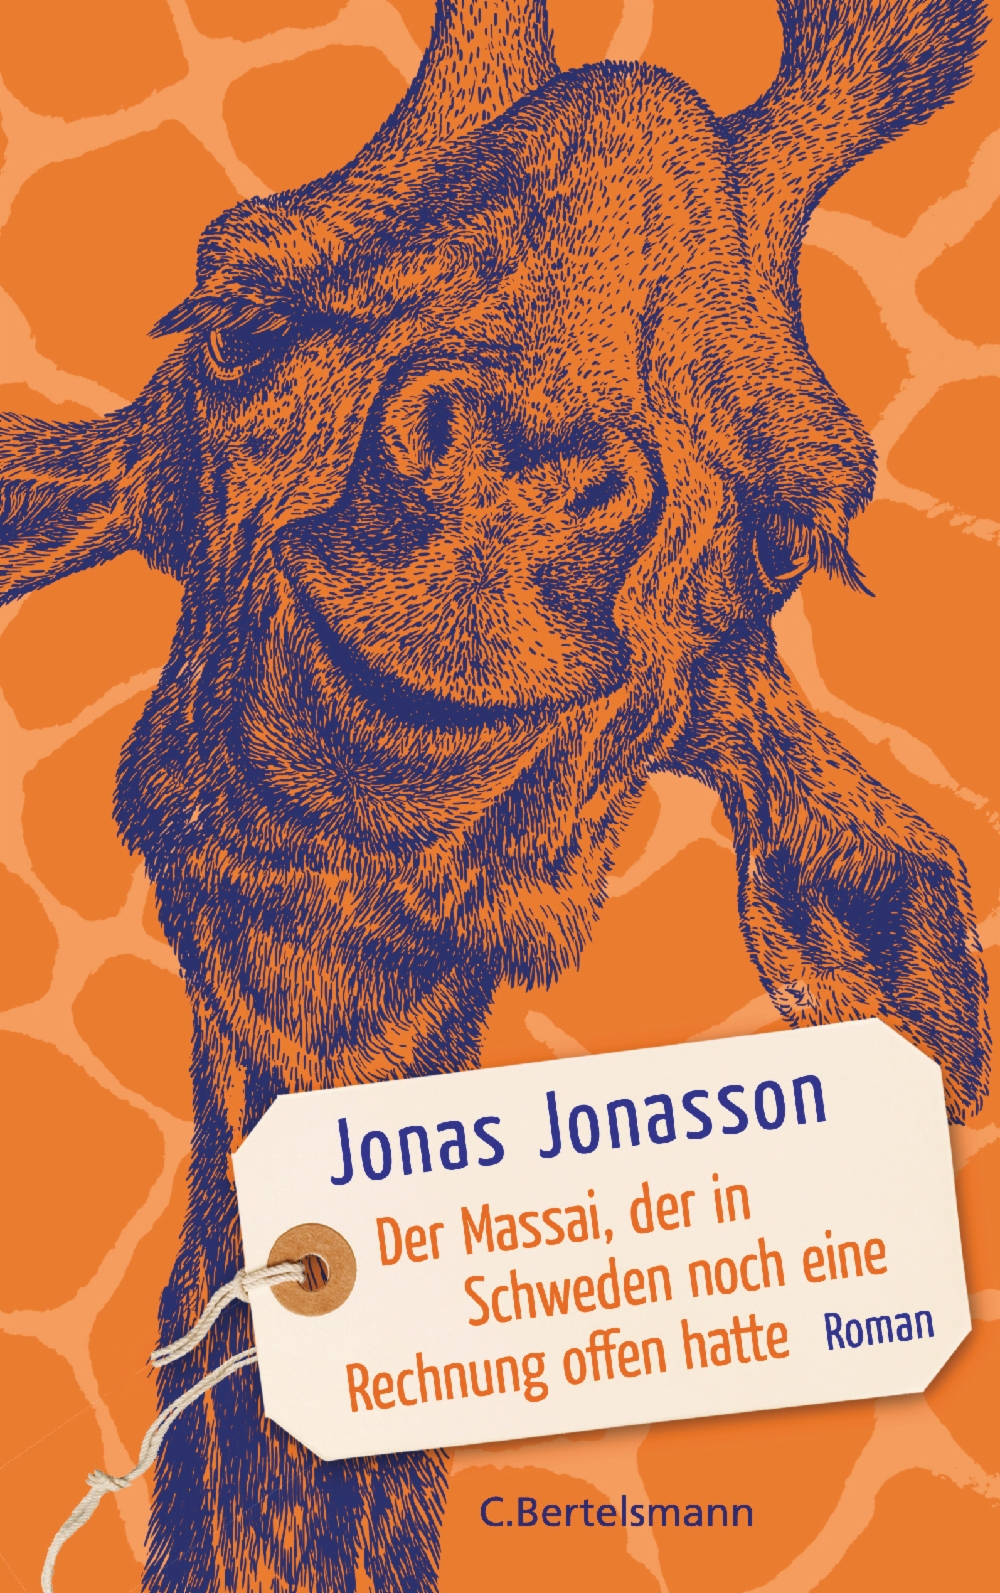 Der Massai, der in Schweden noch eine Rechnung offen hatte von Jonas Jonasson Parkbuchhandlung Buchhandlung Bonn Bad Godesberg